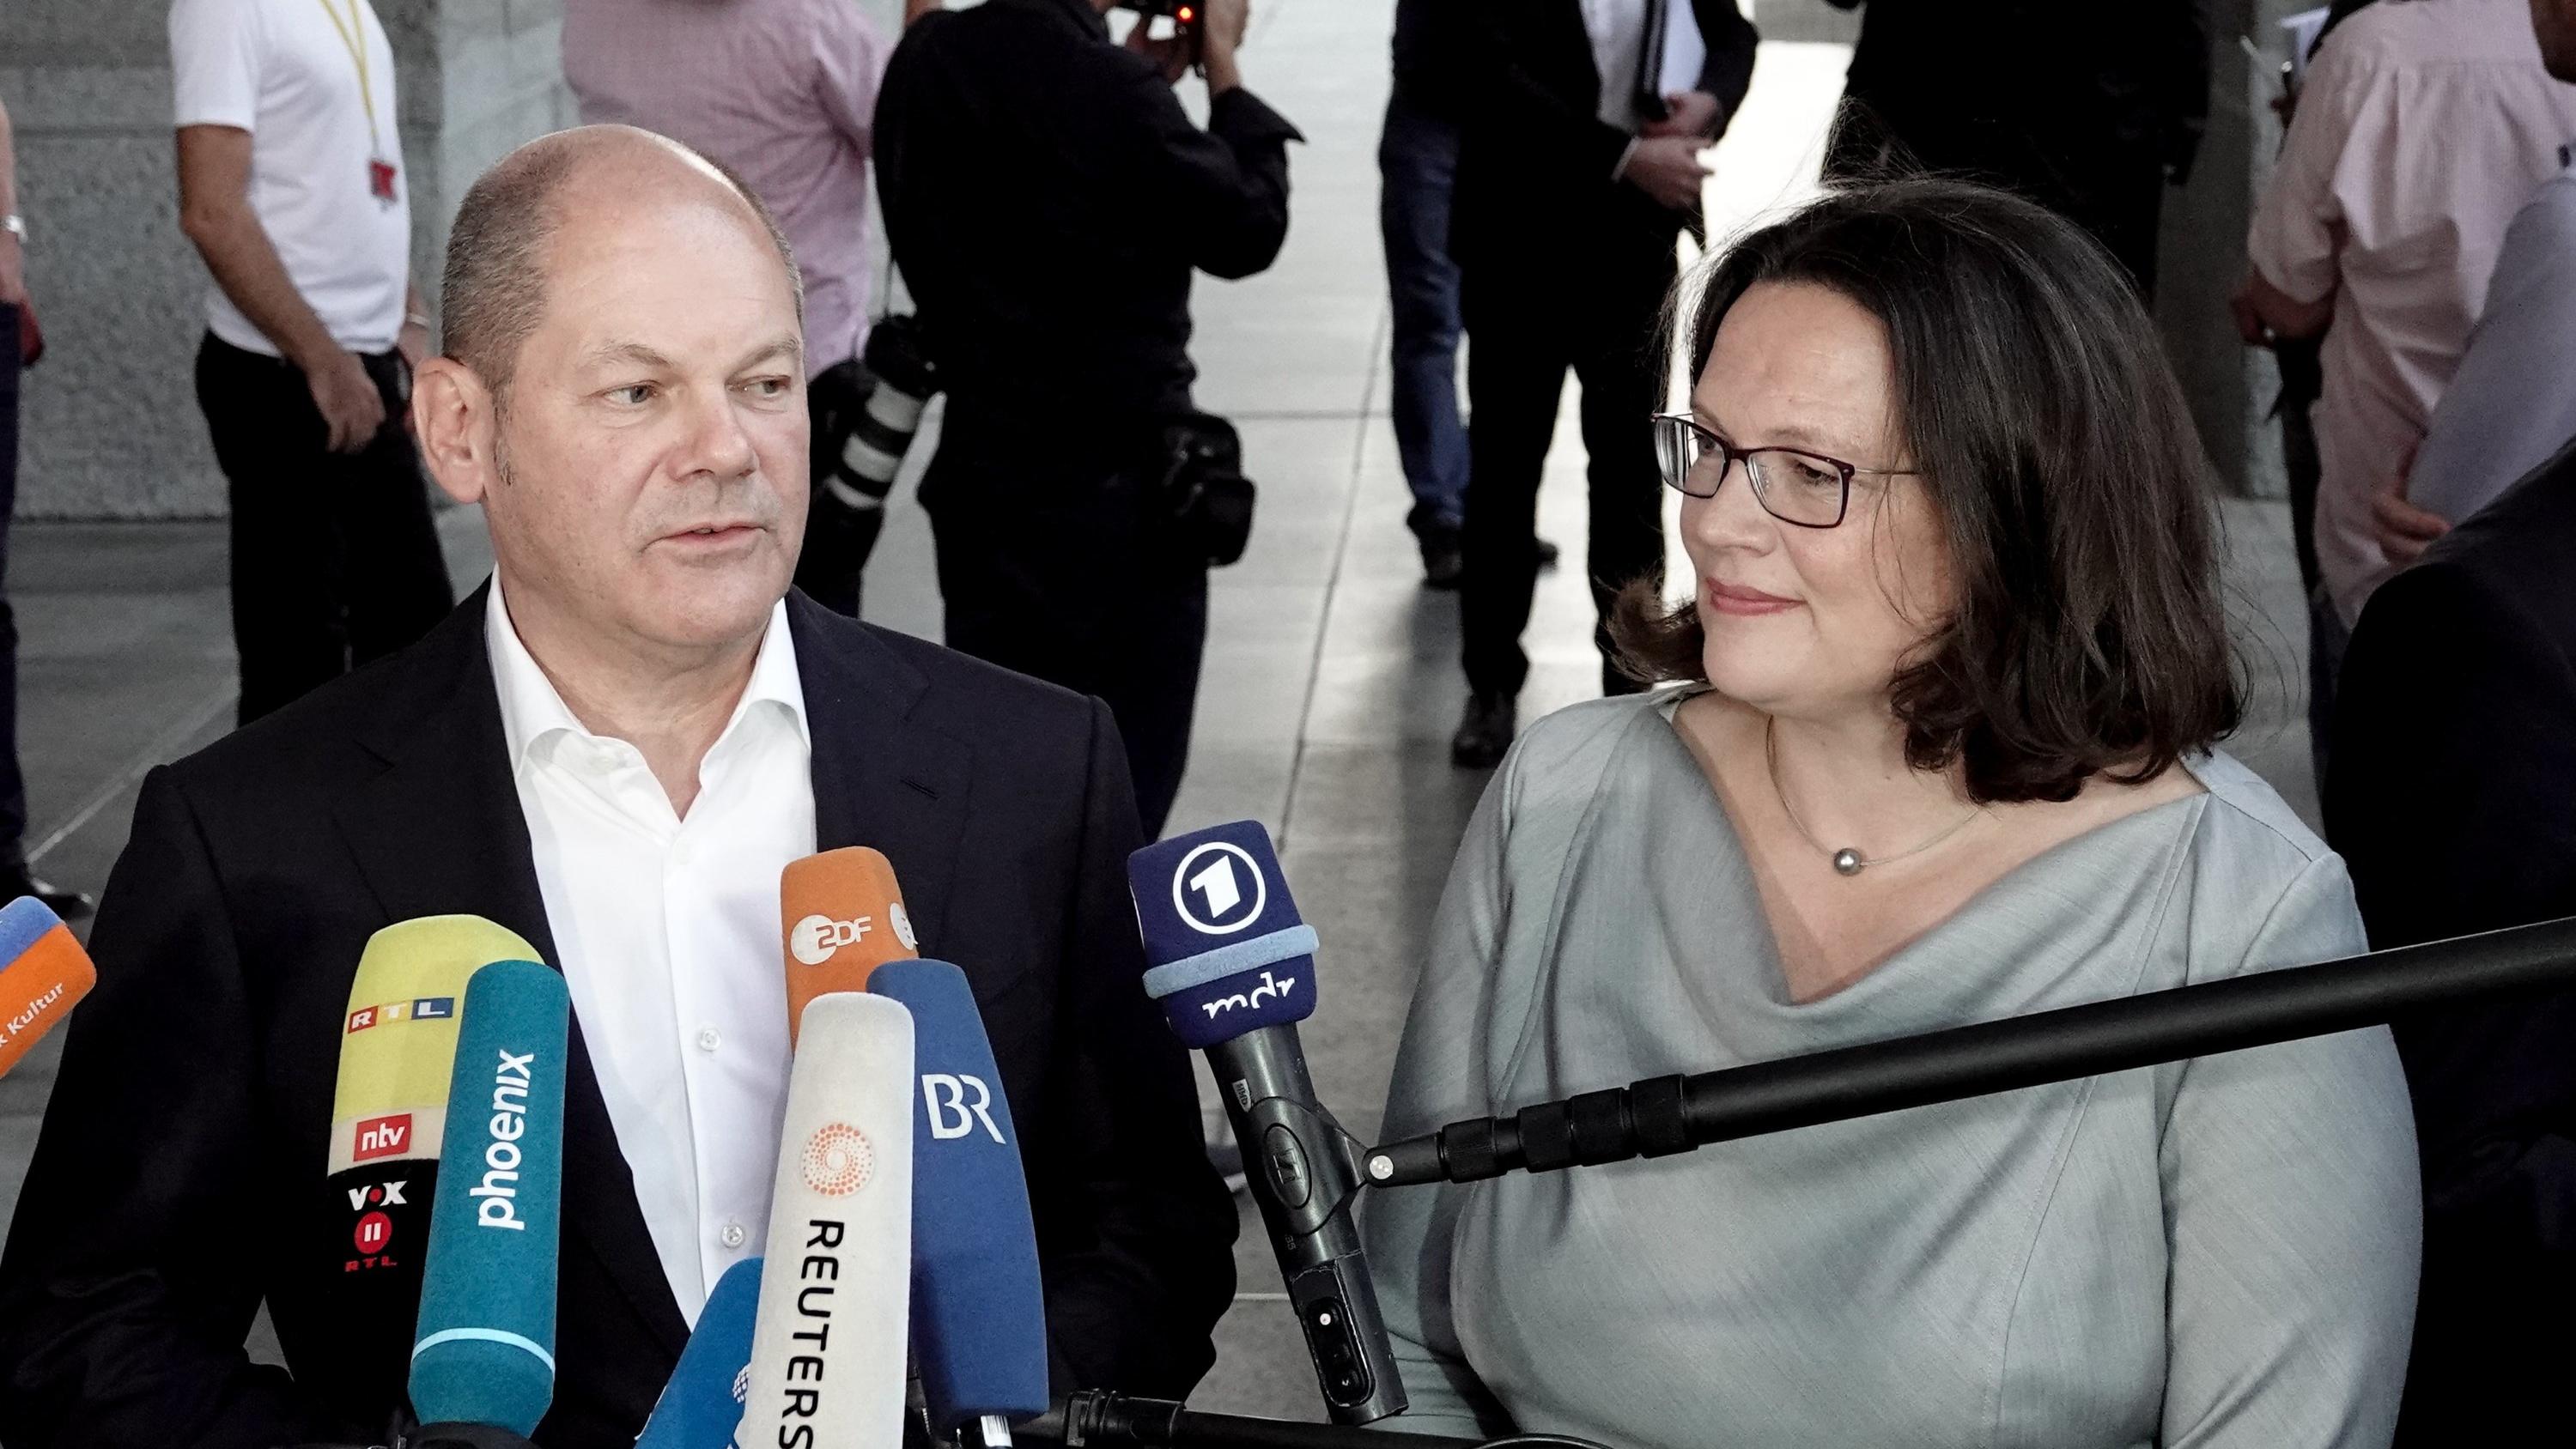 05.07.2018, Berlin: Olaf Scholz (SPD), Bundesfinanzminister, und Andrea Nahles, Fraktionsvorsitzende der SPD, sprechen nach der Einigung des Koalitionsausschusses von CDU/CSU und SPD auf einen Asylkompromiss vor dem Reichtagsgebäude zu den Medienvert